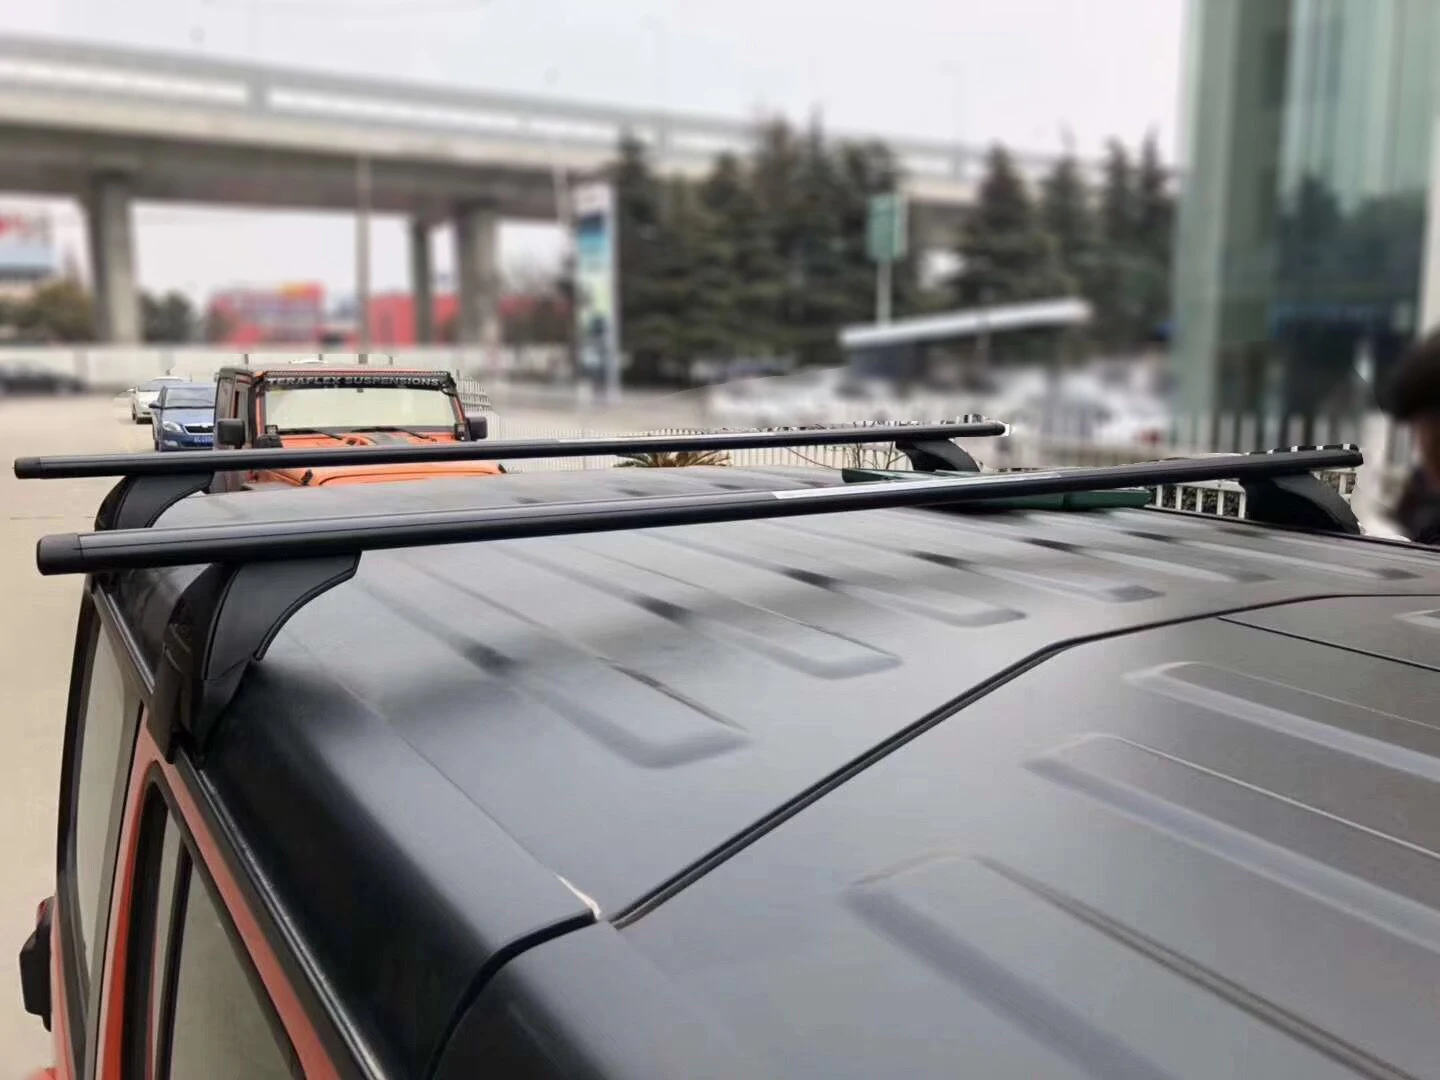 SXMA JL1068 Багажный кронштейн на крыше с поперечной перекладиной Держатель багажника на крыше каноэ для багажника на крыше для Jeep Wrangler JL 2018+